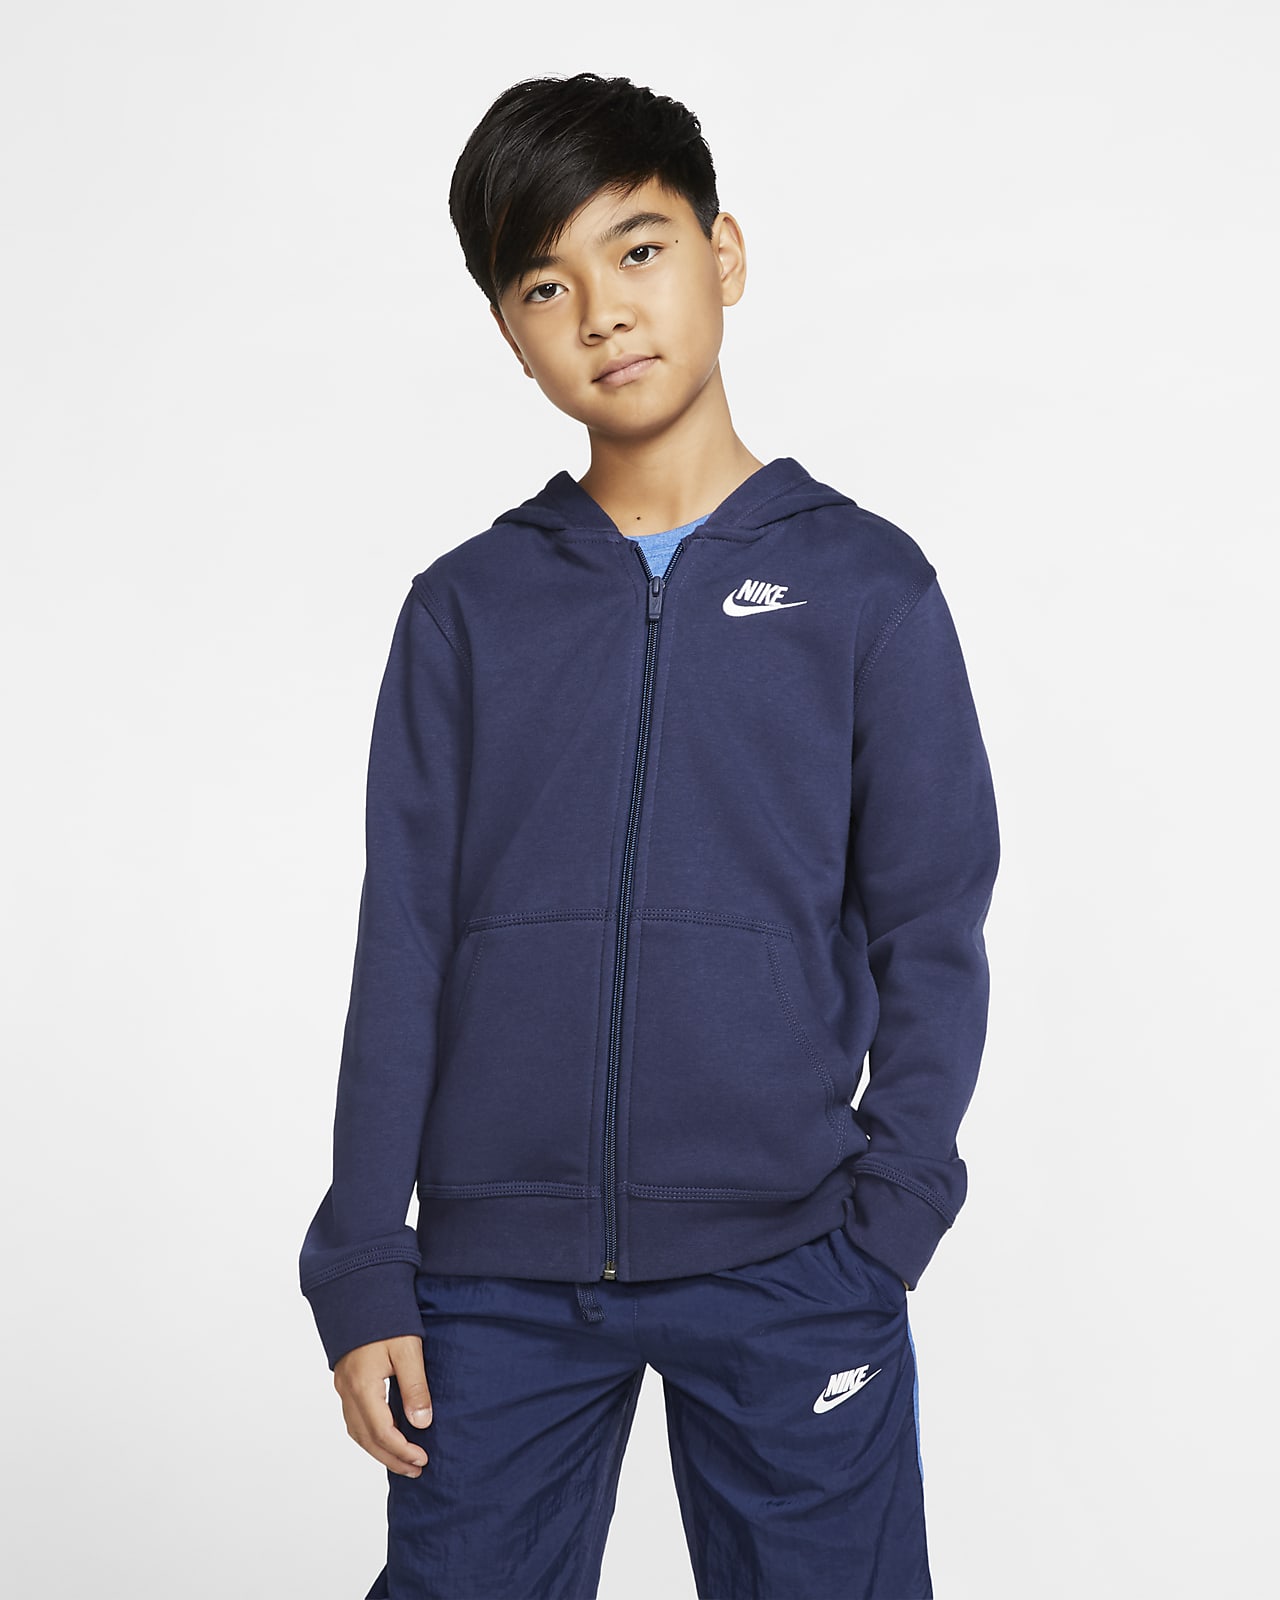 Μπλούζα με κουκούλα και φερμουάρ σε όλο το μήκος Nike Sportswear Club για μεγάλα παιδιά